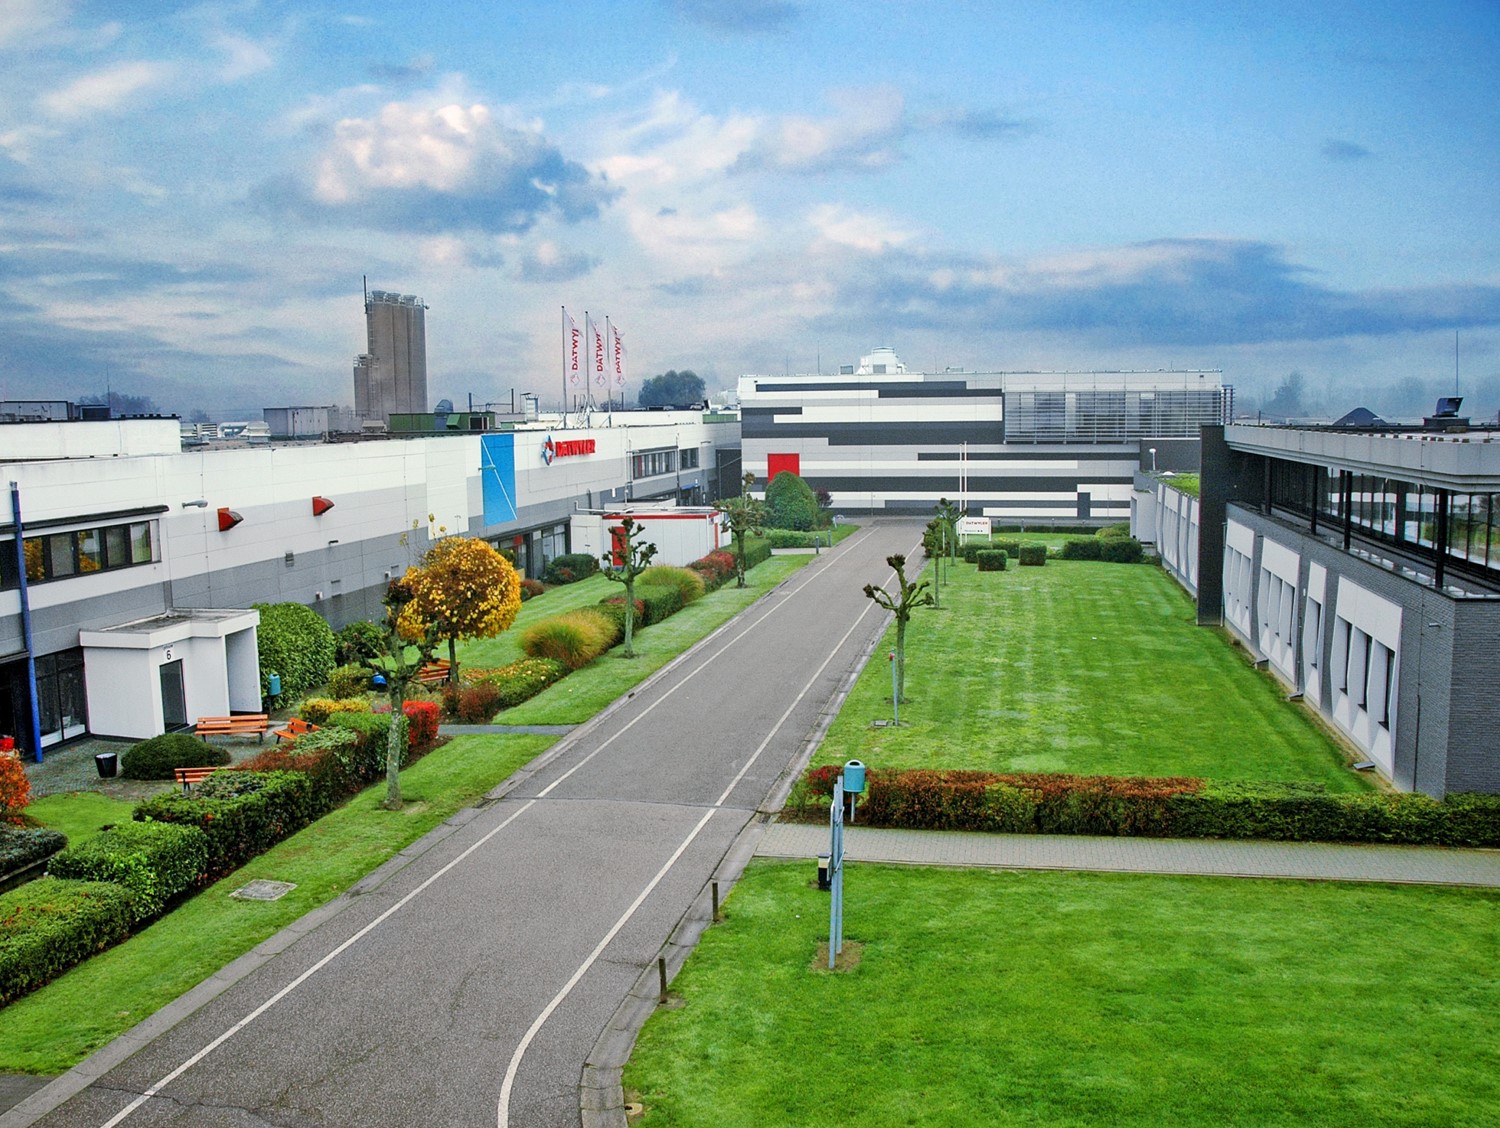 Dätwyler Fabrikgebäude in Alken, Belgien